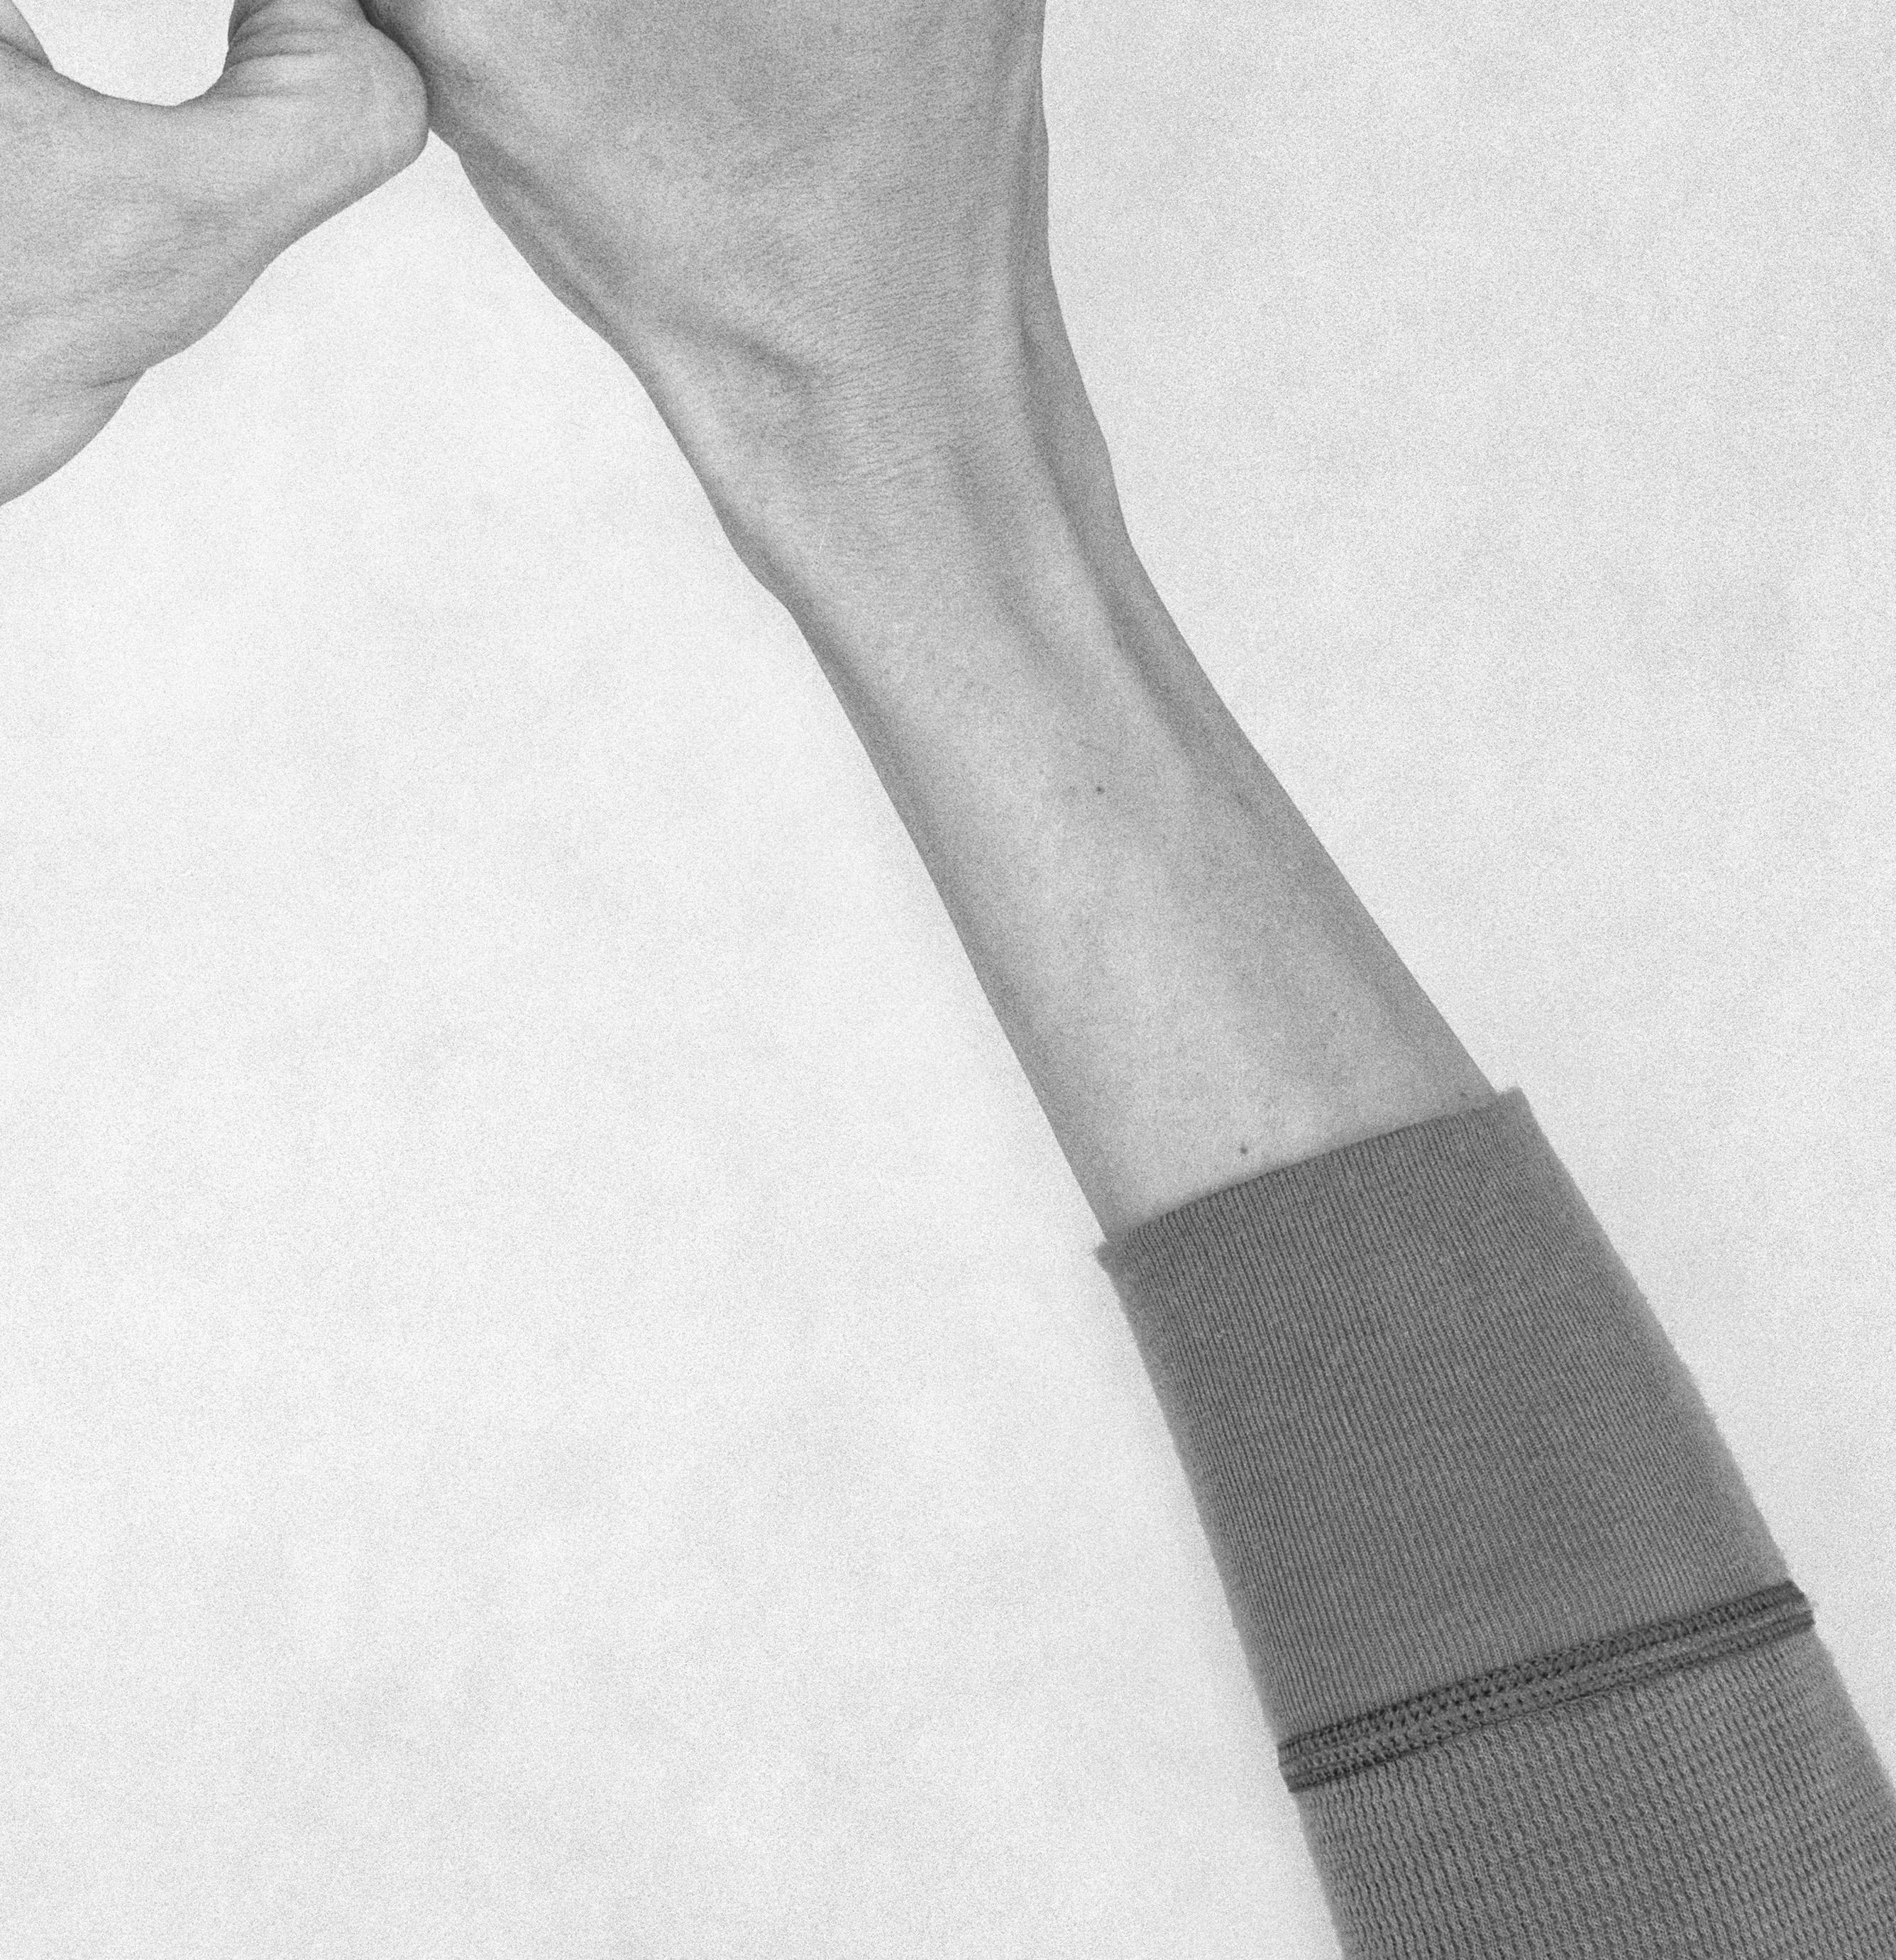 Ohne Titel XXV (nc-8-S1-0003) 2010 von Nico Baixas
Aus der Reihe Chiromorphose
Archivalischer Pigmentdruck auf Hahnemuhle Kunstdruckpapier
Blattgröße: 100 H cm x 100 B cm. 
Bildgröße: 90 H cm x 90 B cm. 
Auflage von 5 +